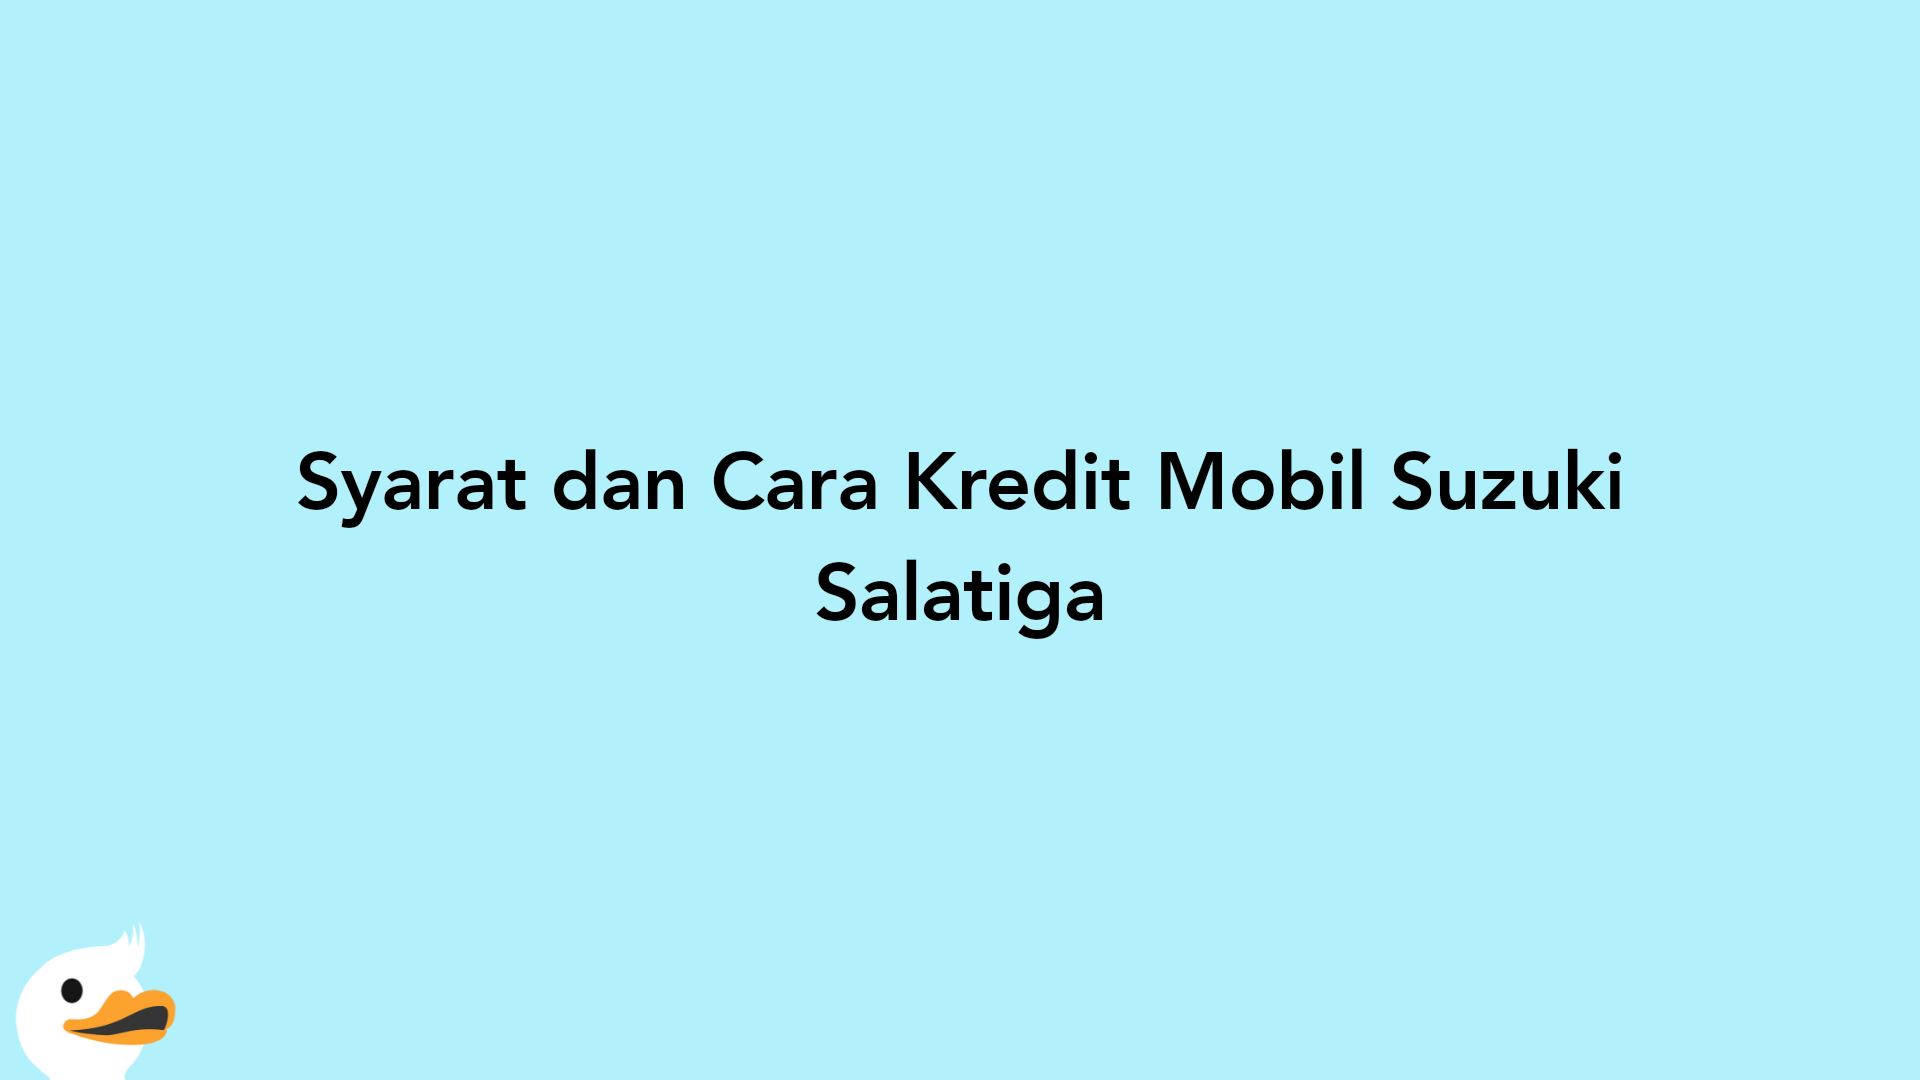 Syarat dan Cara Kredit Mobil Suzuki Salatiga